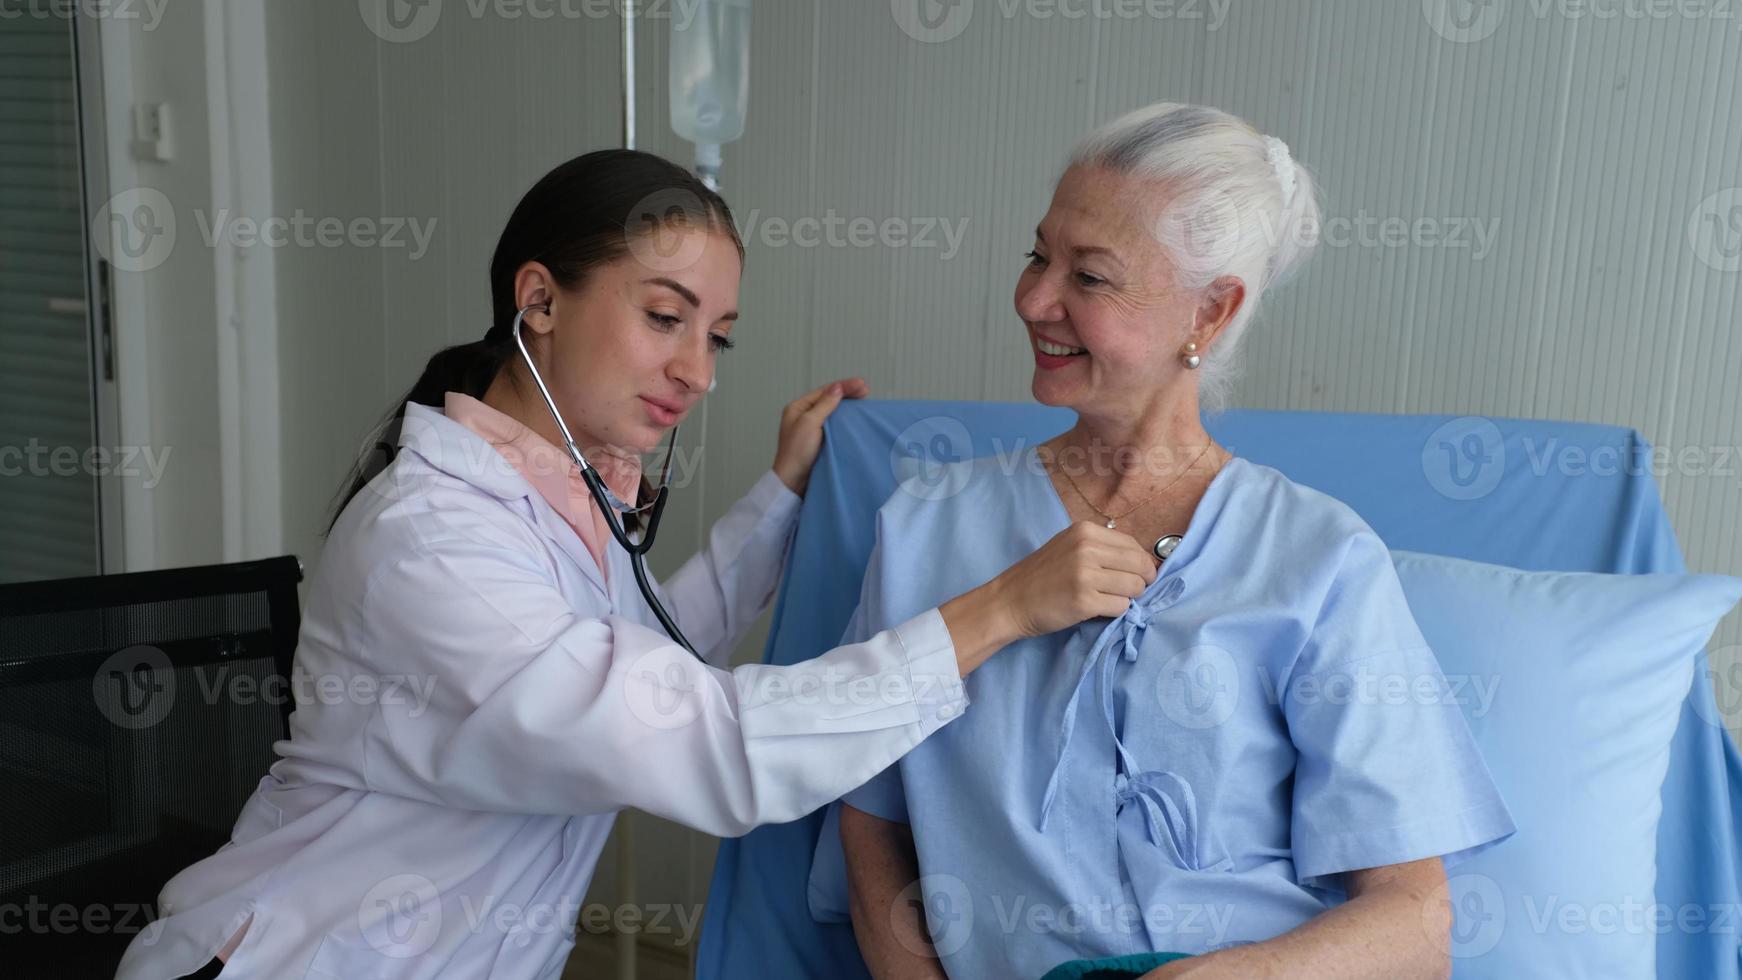 medico di sesso femminile e paziente anziano check-up in ospedale. foto